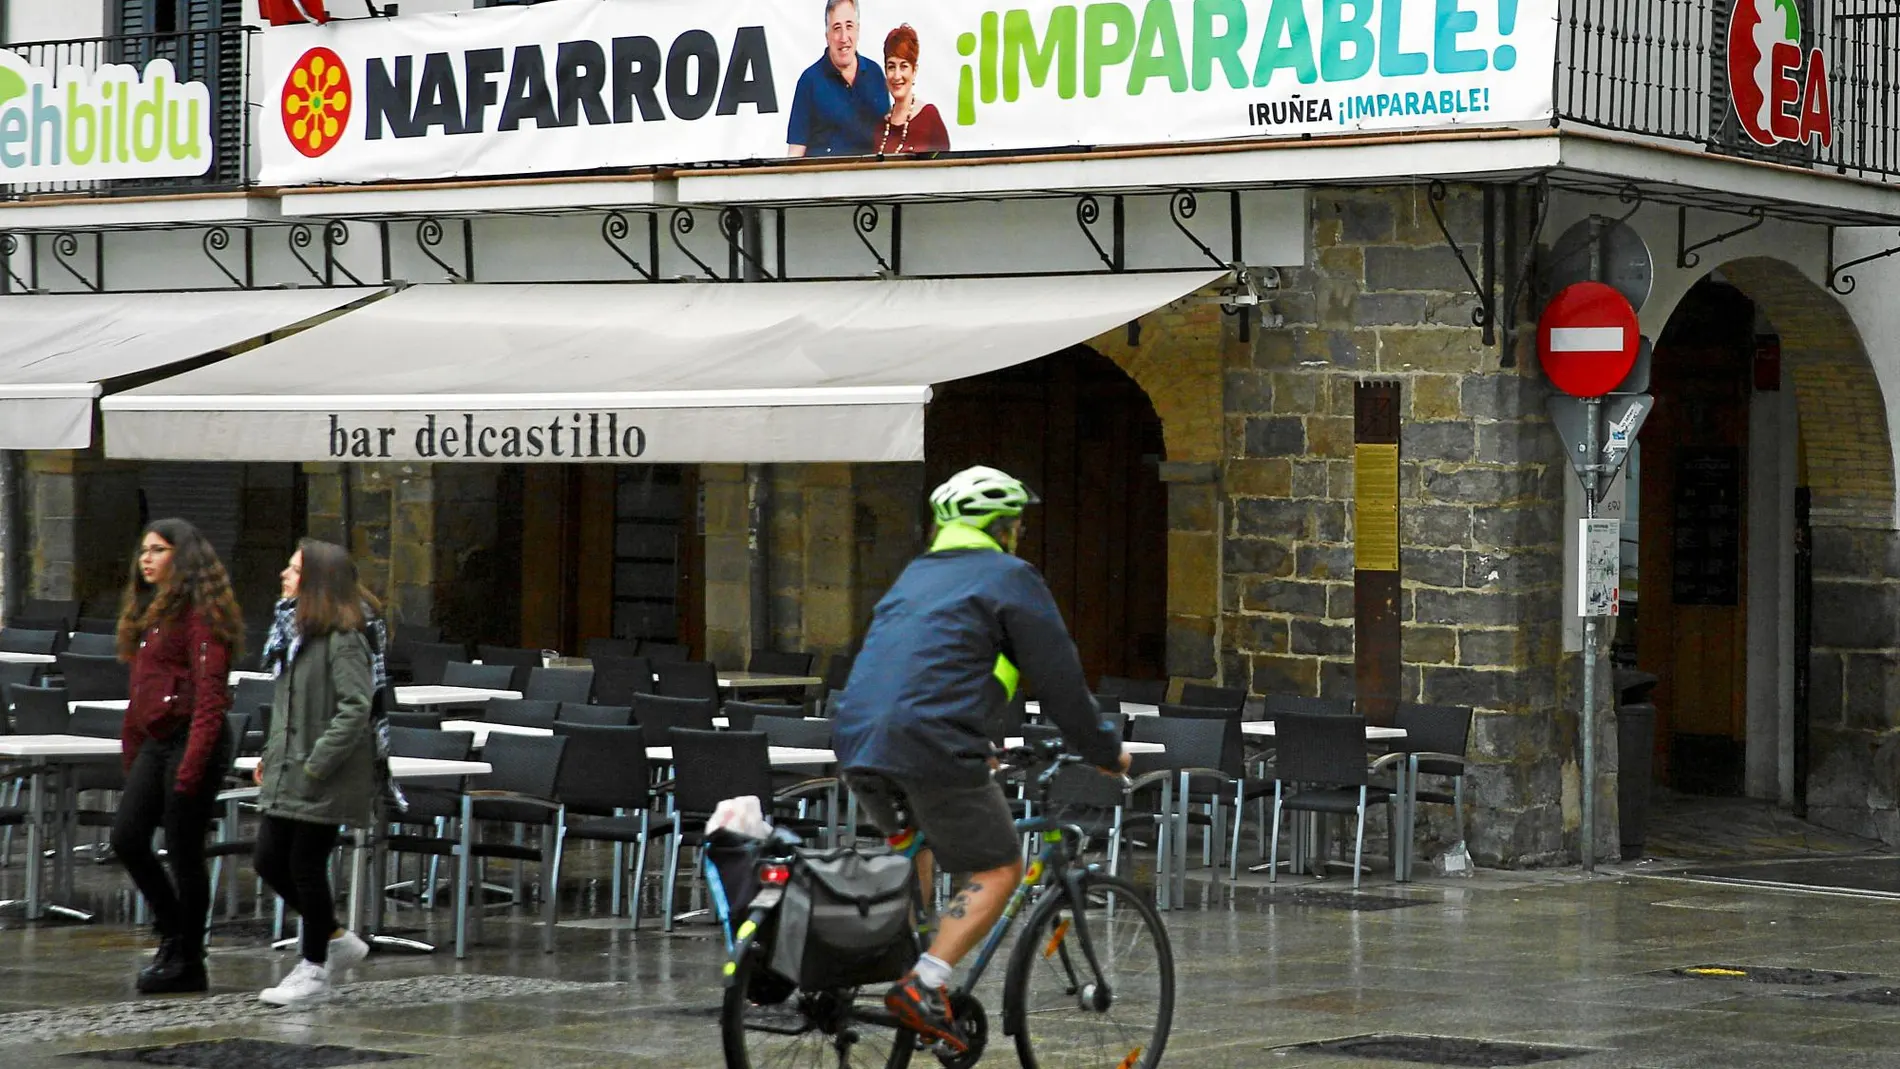 Las calles de Pamplona, repletas de carteles electorales, muestran ese sentimiento vasco que aflora en Navarra. Fotos: Cipriano Pastrano